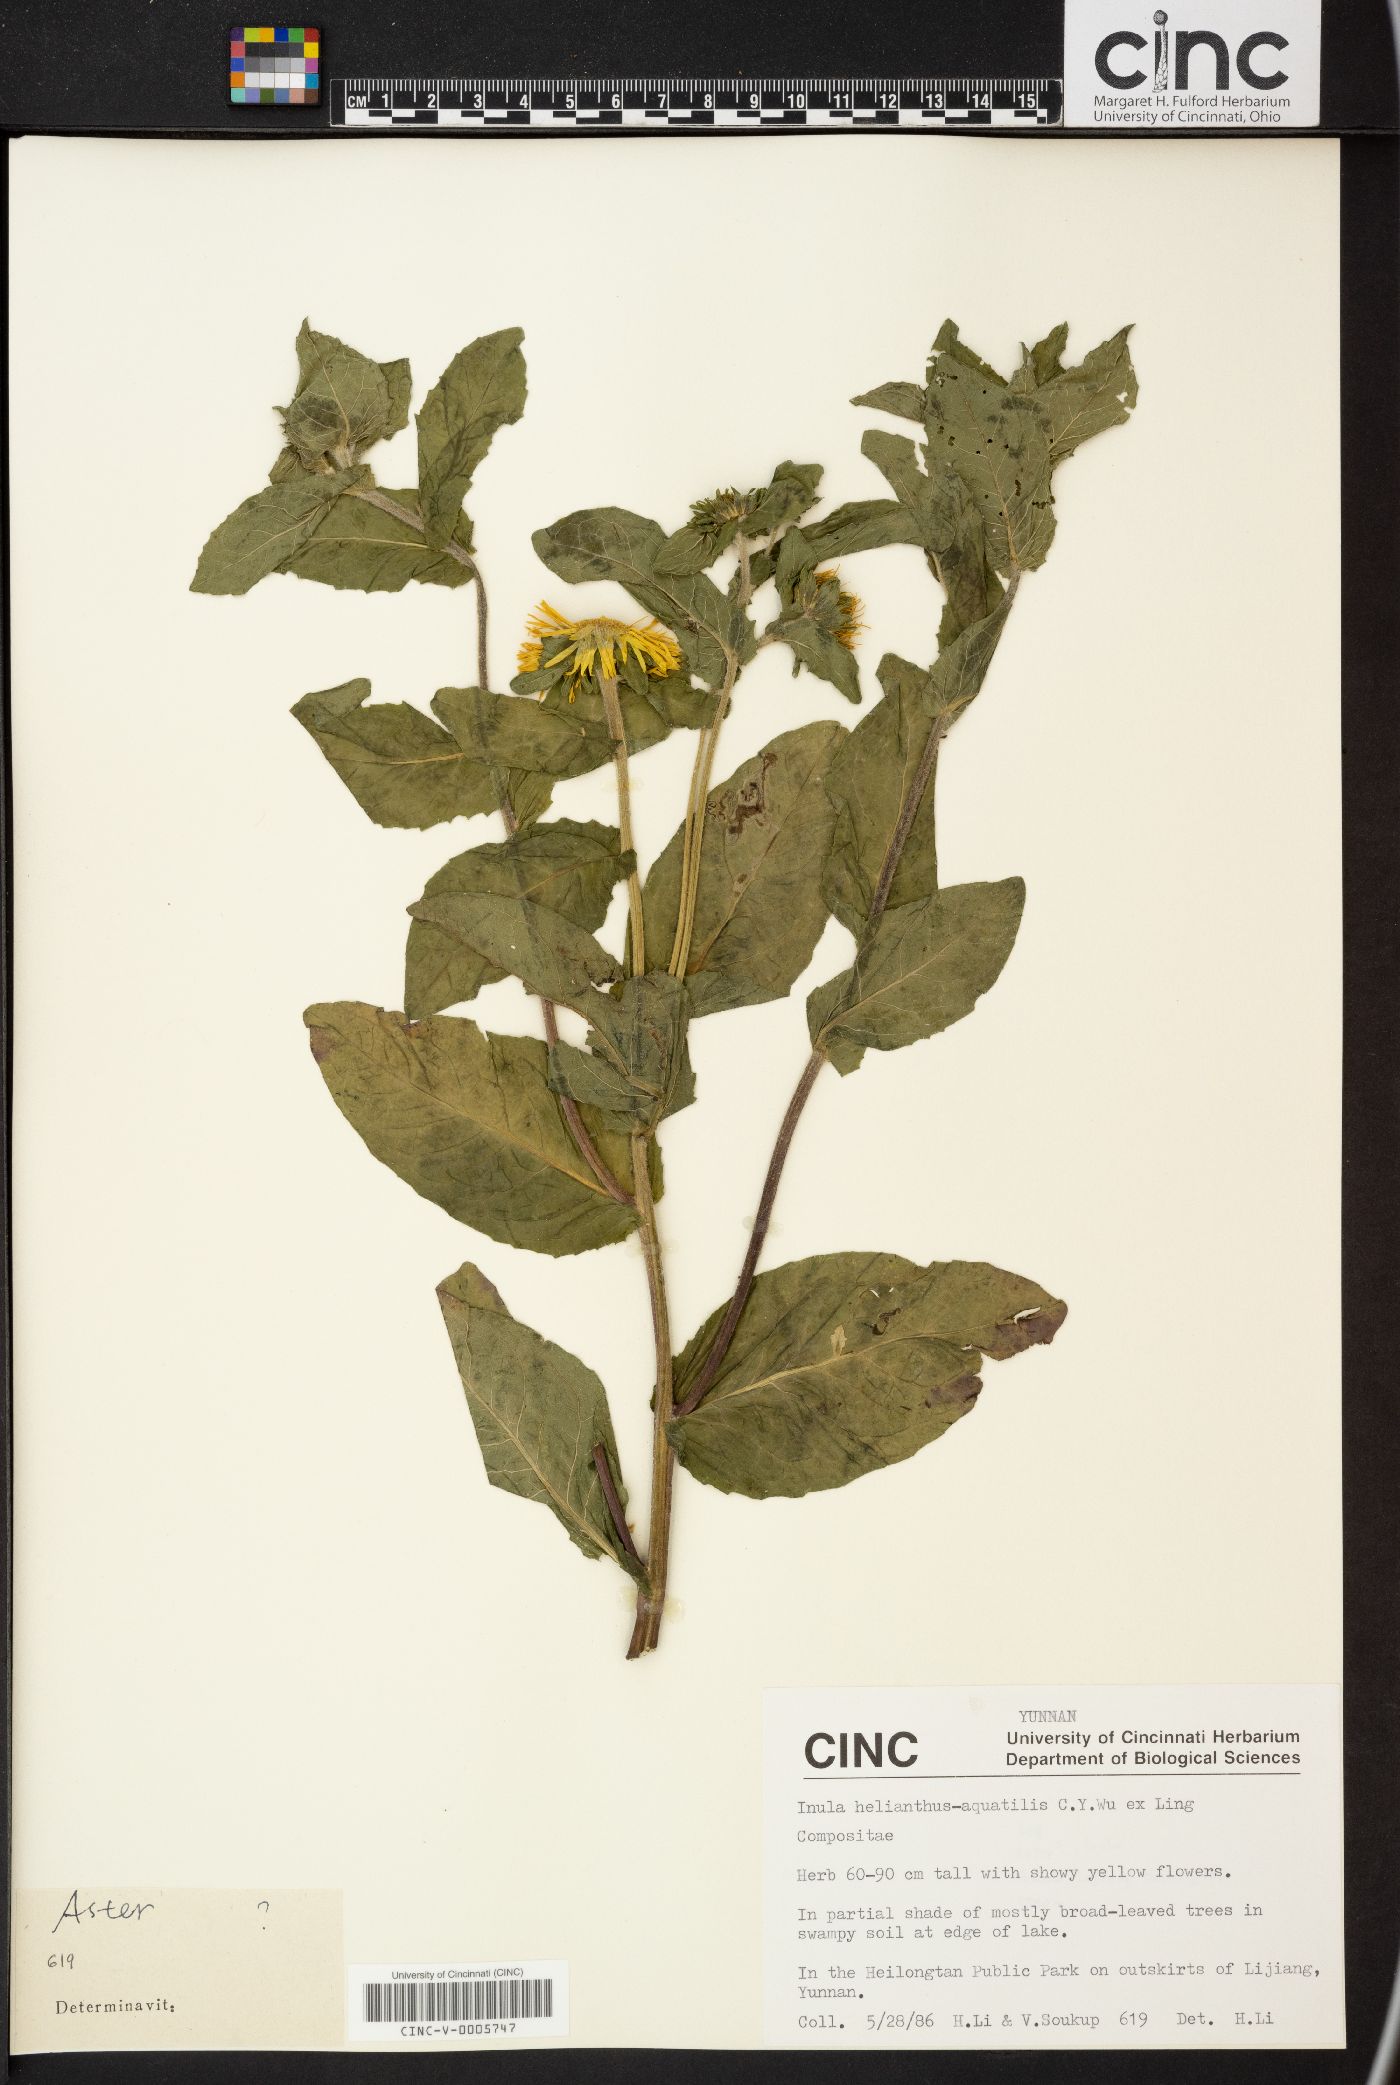 Inula helianthus-aquatilis image